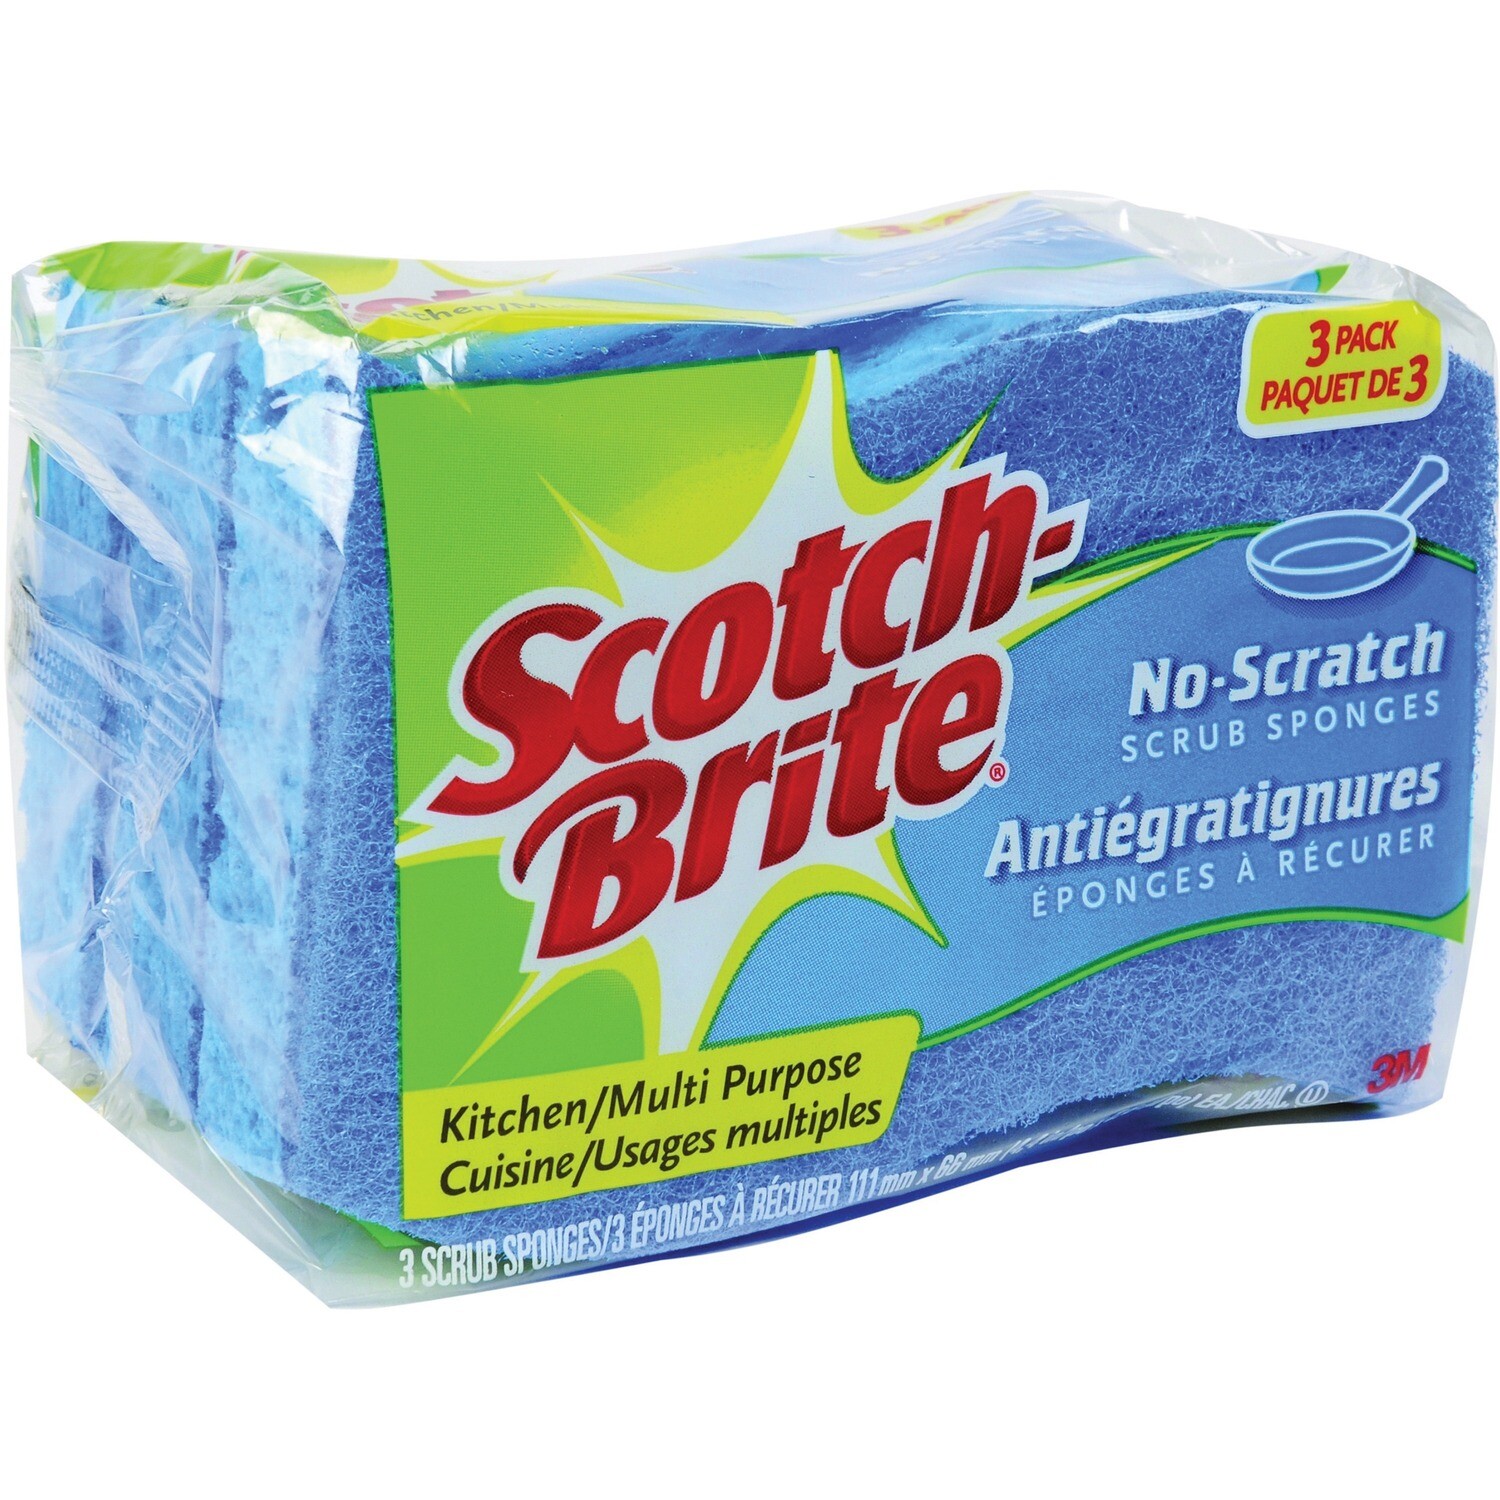 Household / Kitchen / Scotch Brite Multipurpose Sponge, 3 pk